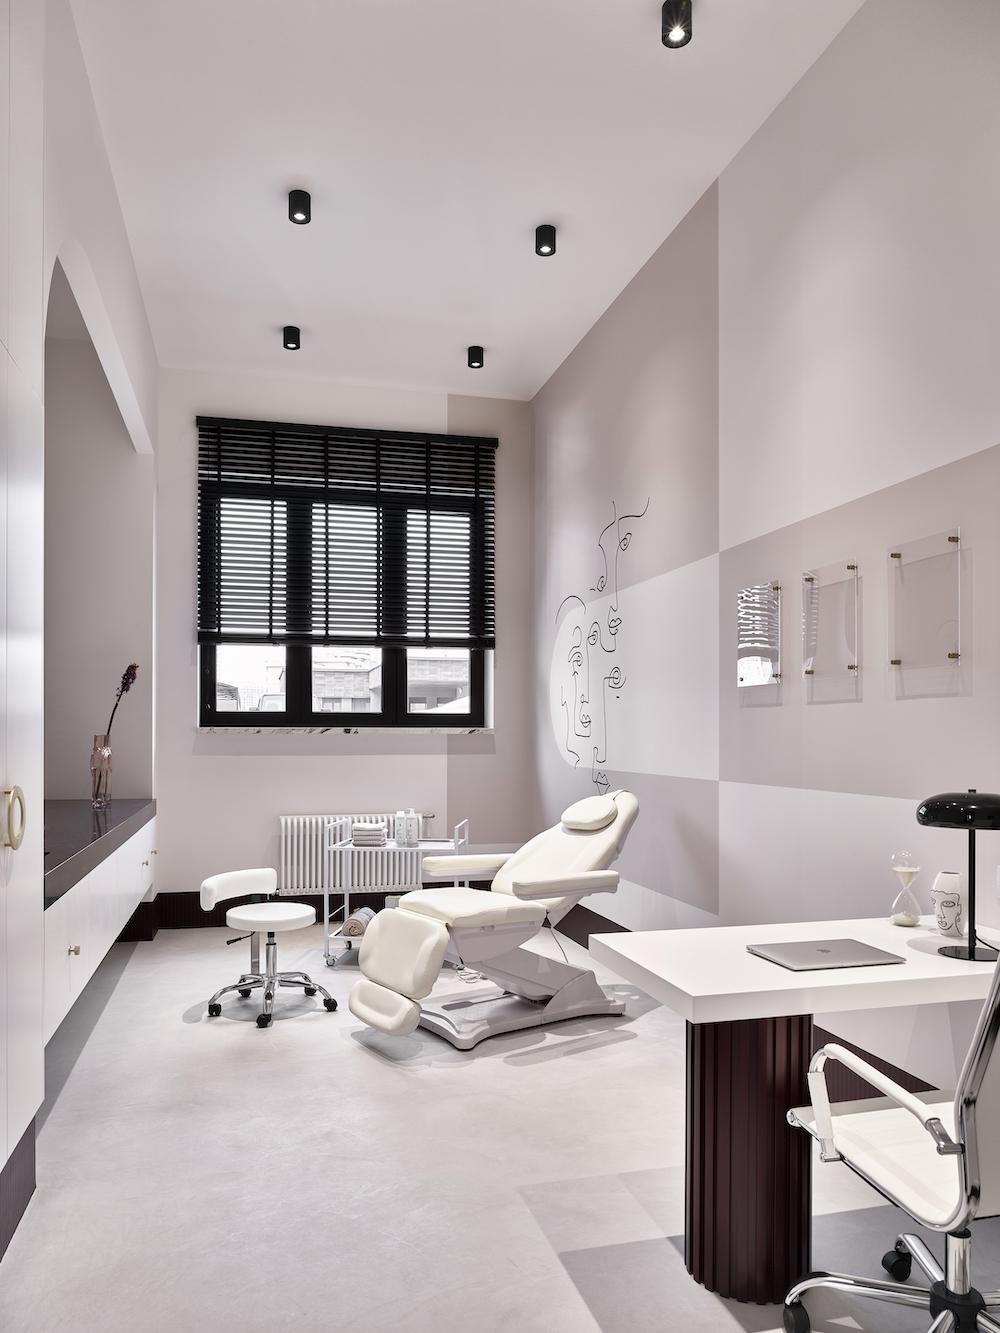 970平方呎的醫學美容診所，設計融入畢加索作品元素